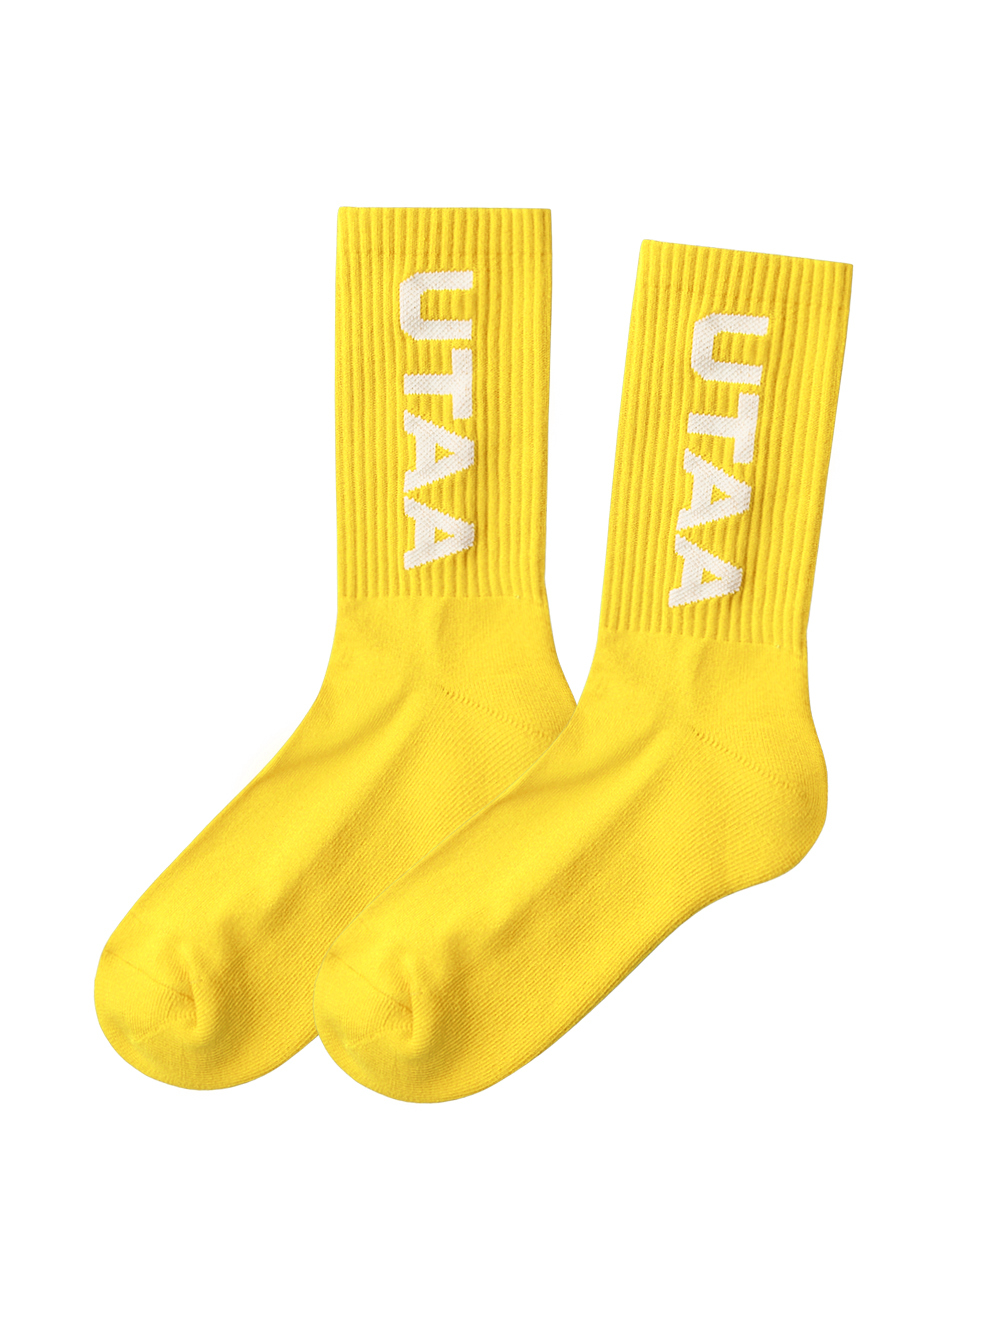 UTAA Logo Socks : Yellow  (UC0GSF140YE)